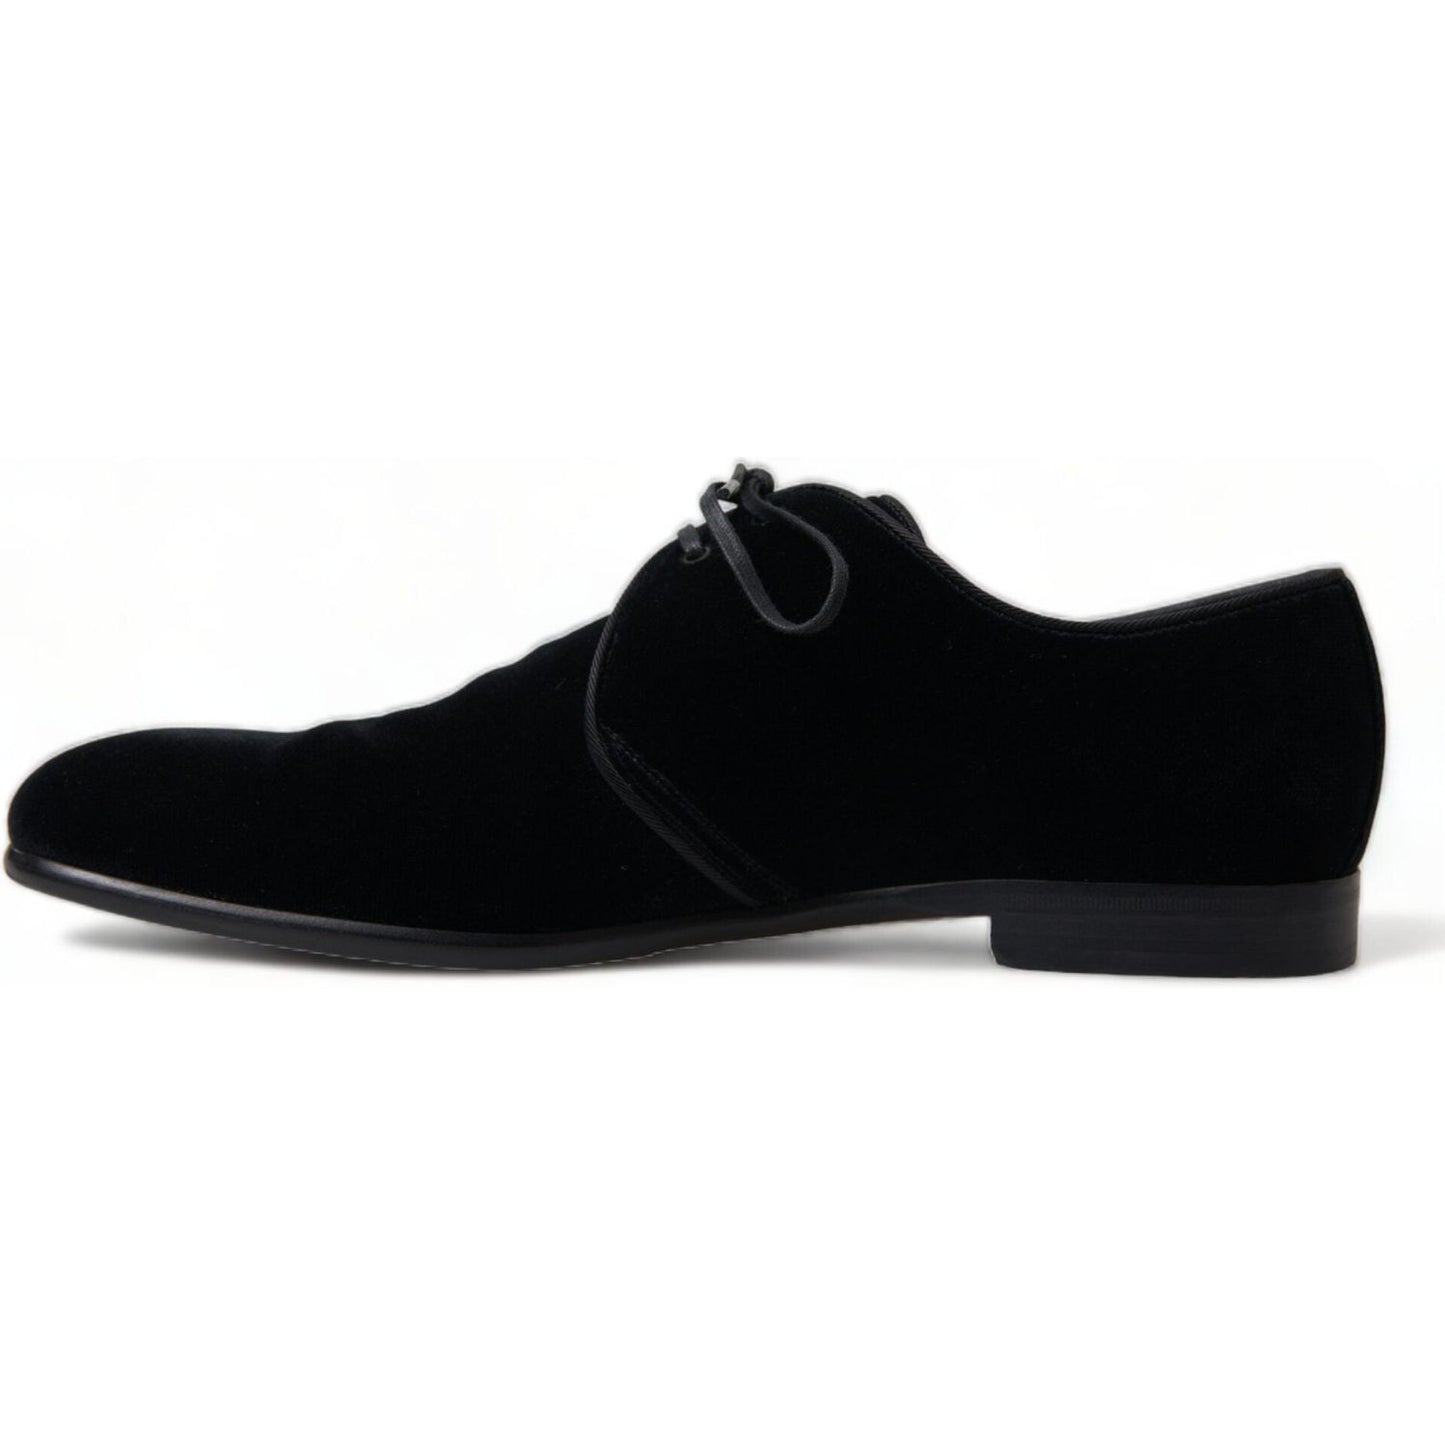 Dolce & Gabbana Elegant Black Velvet Derby Dress Shoes black-velvet-lace-up-formal-derby-dress-shoes 465A1262-bg-scaled-66bbe496-37d.jpg